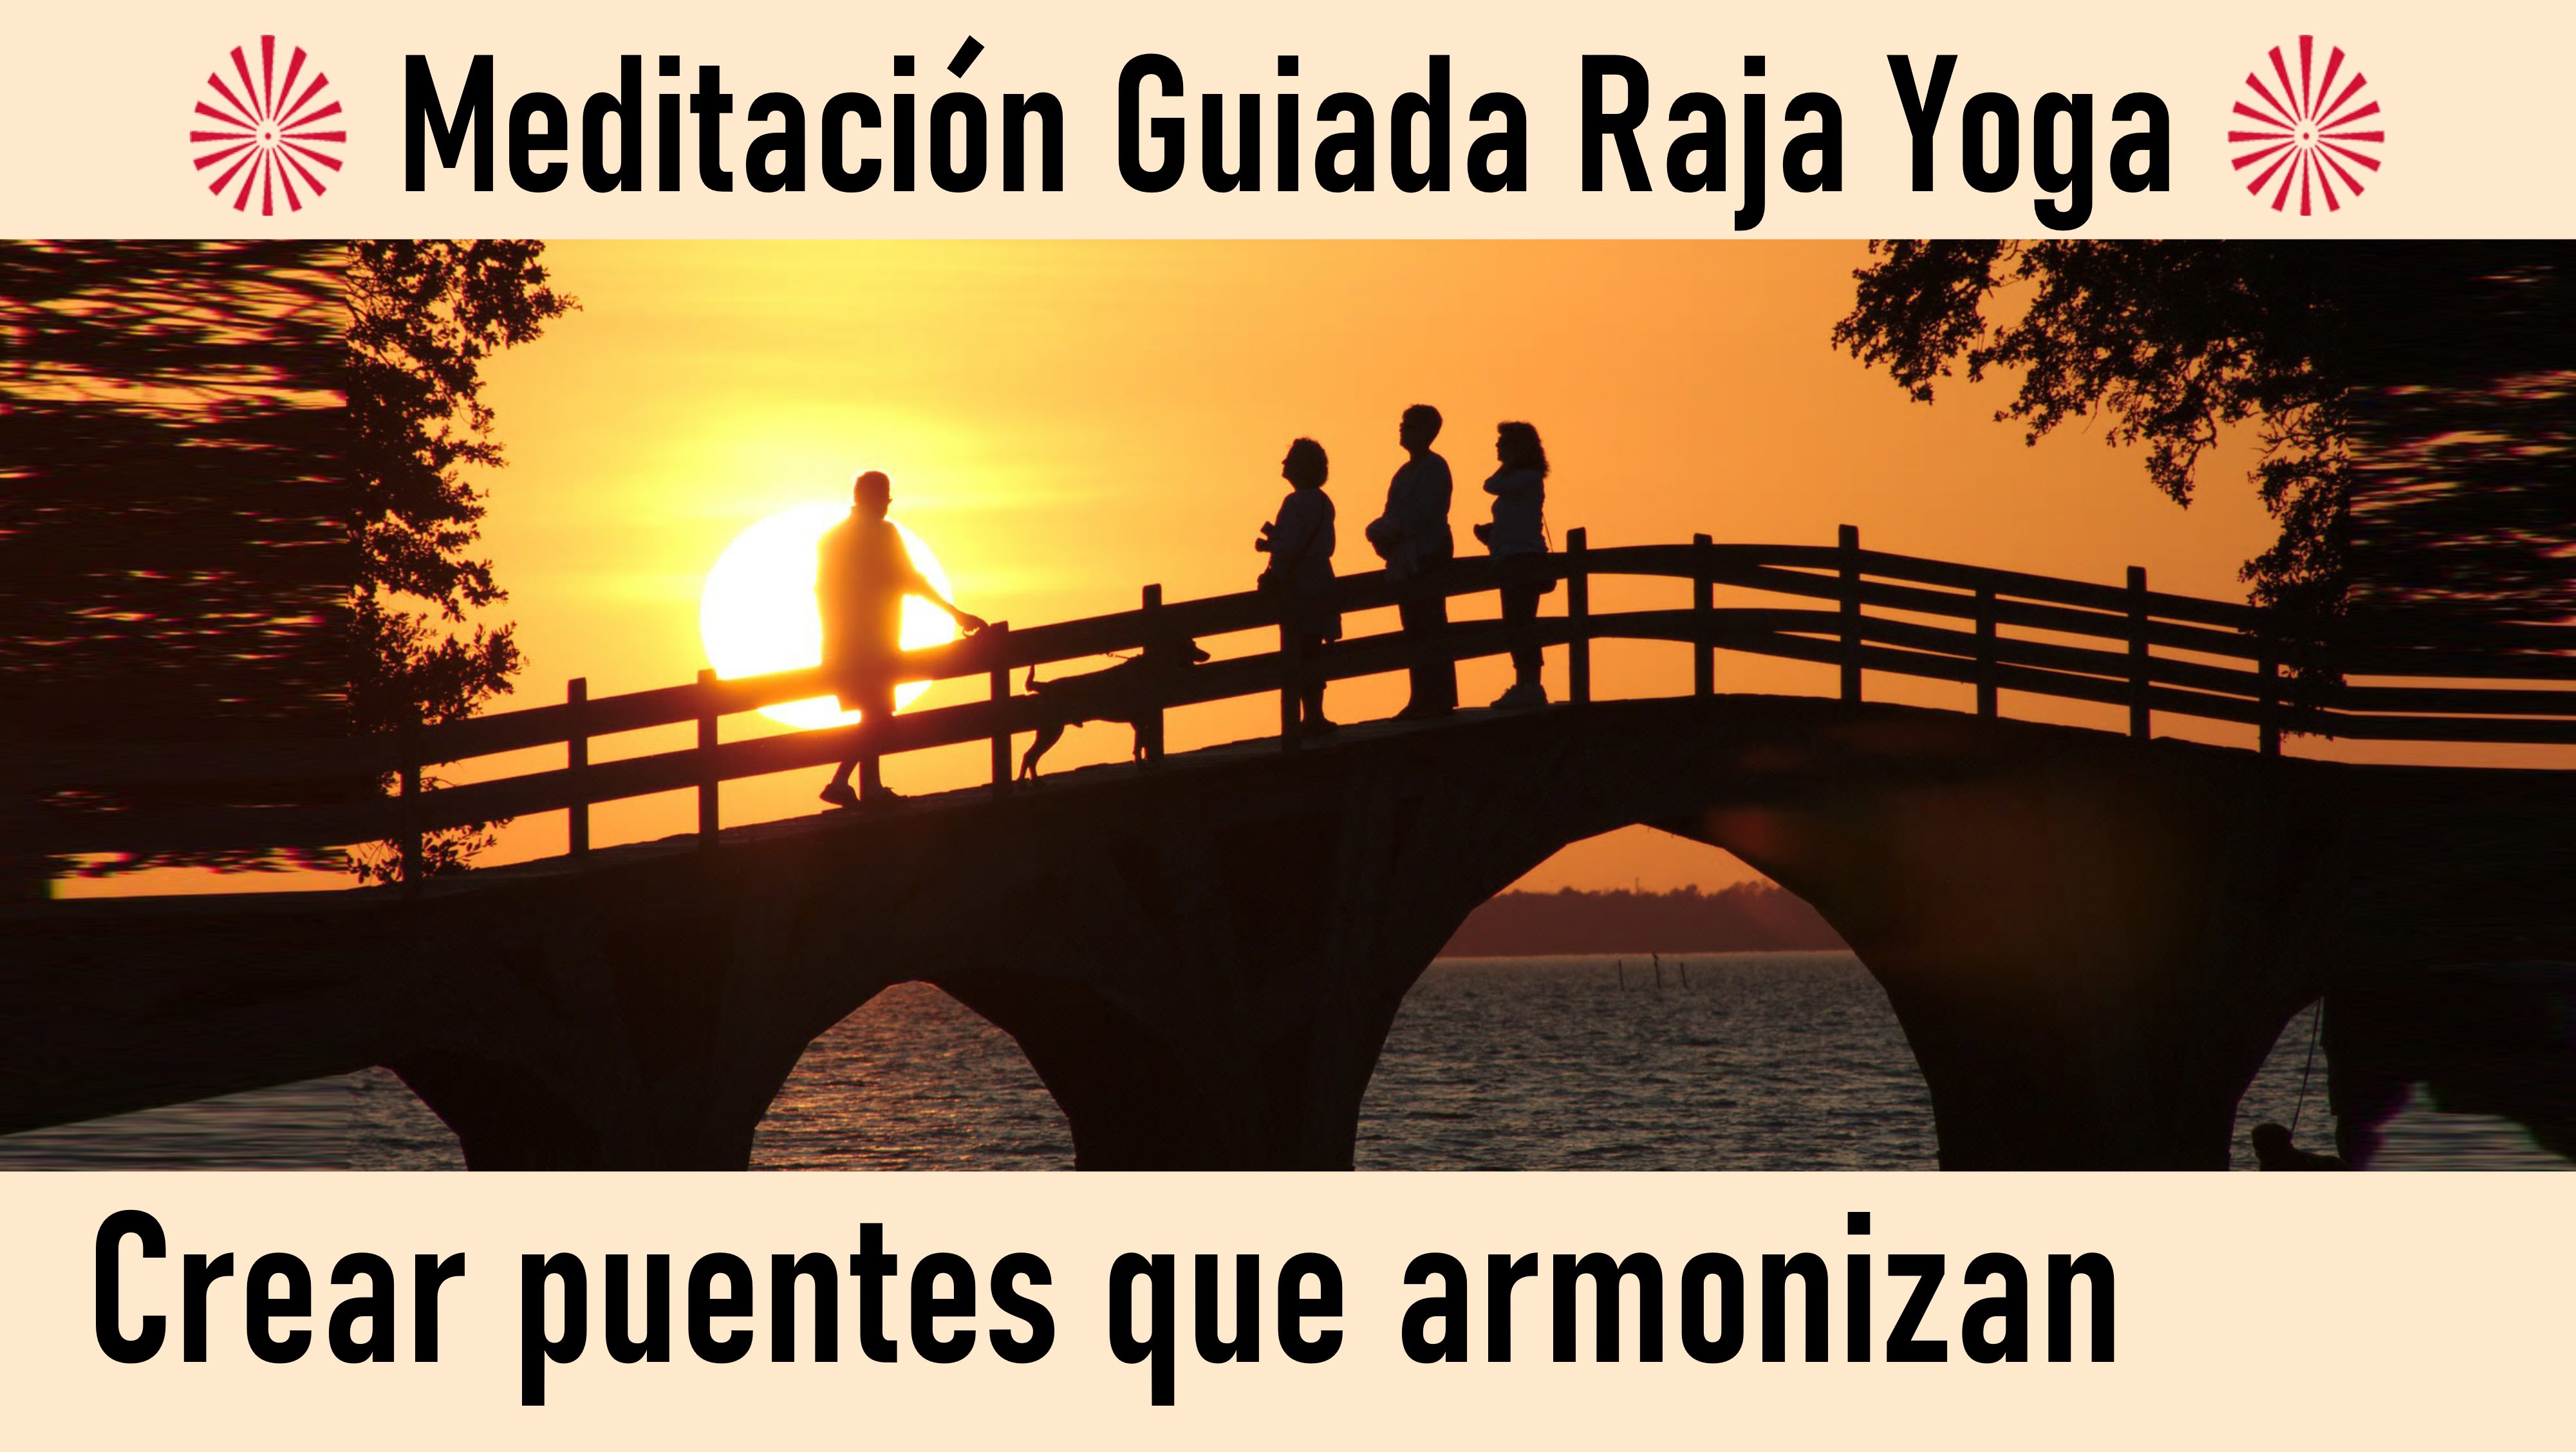 Meditación Raja Yoga: Crear puentes que armonizan (24 Julio 2020) On-line desde Barcelona